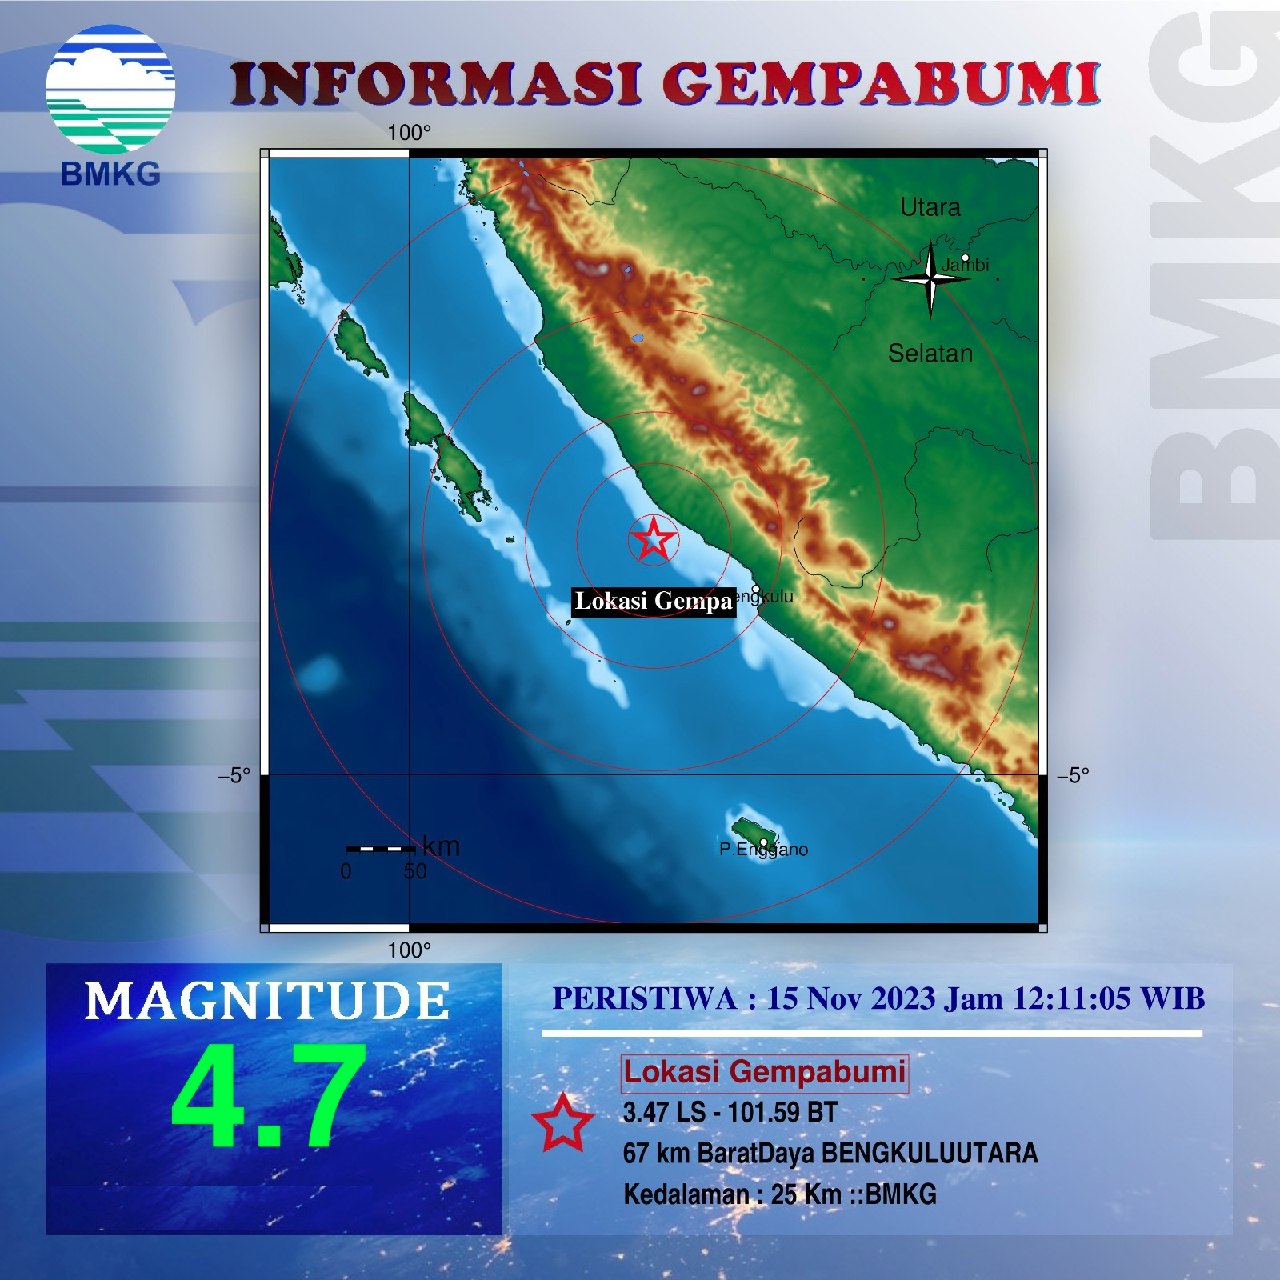 Update Gempa Bumi! Berkekuatan 4,7 Magnitude, BMKG jelaskan Titik Lokasinya di Barat Daya Bengkulu Utara